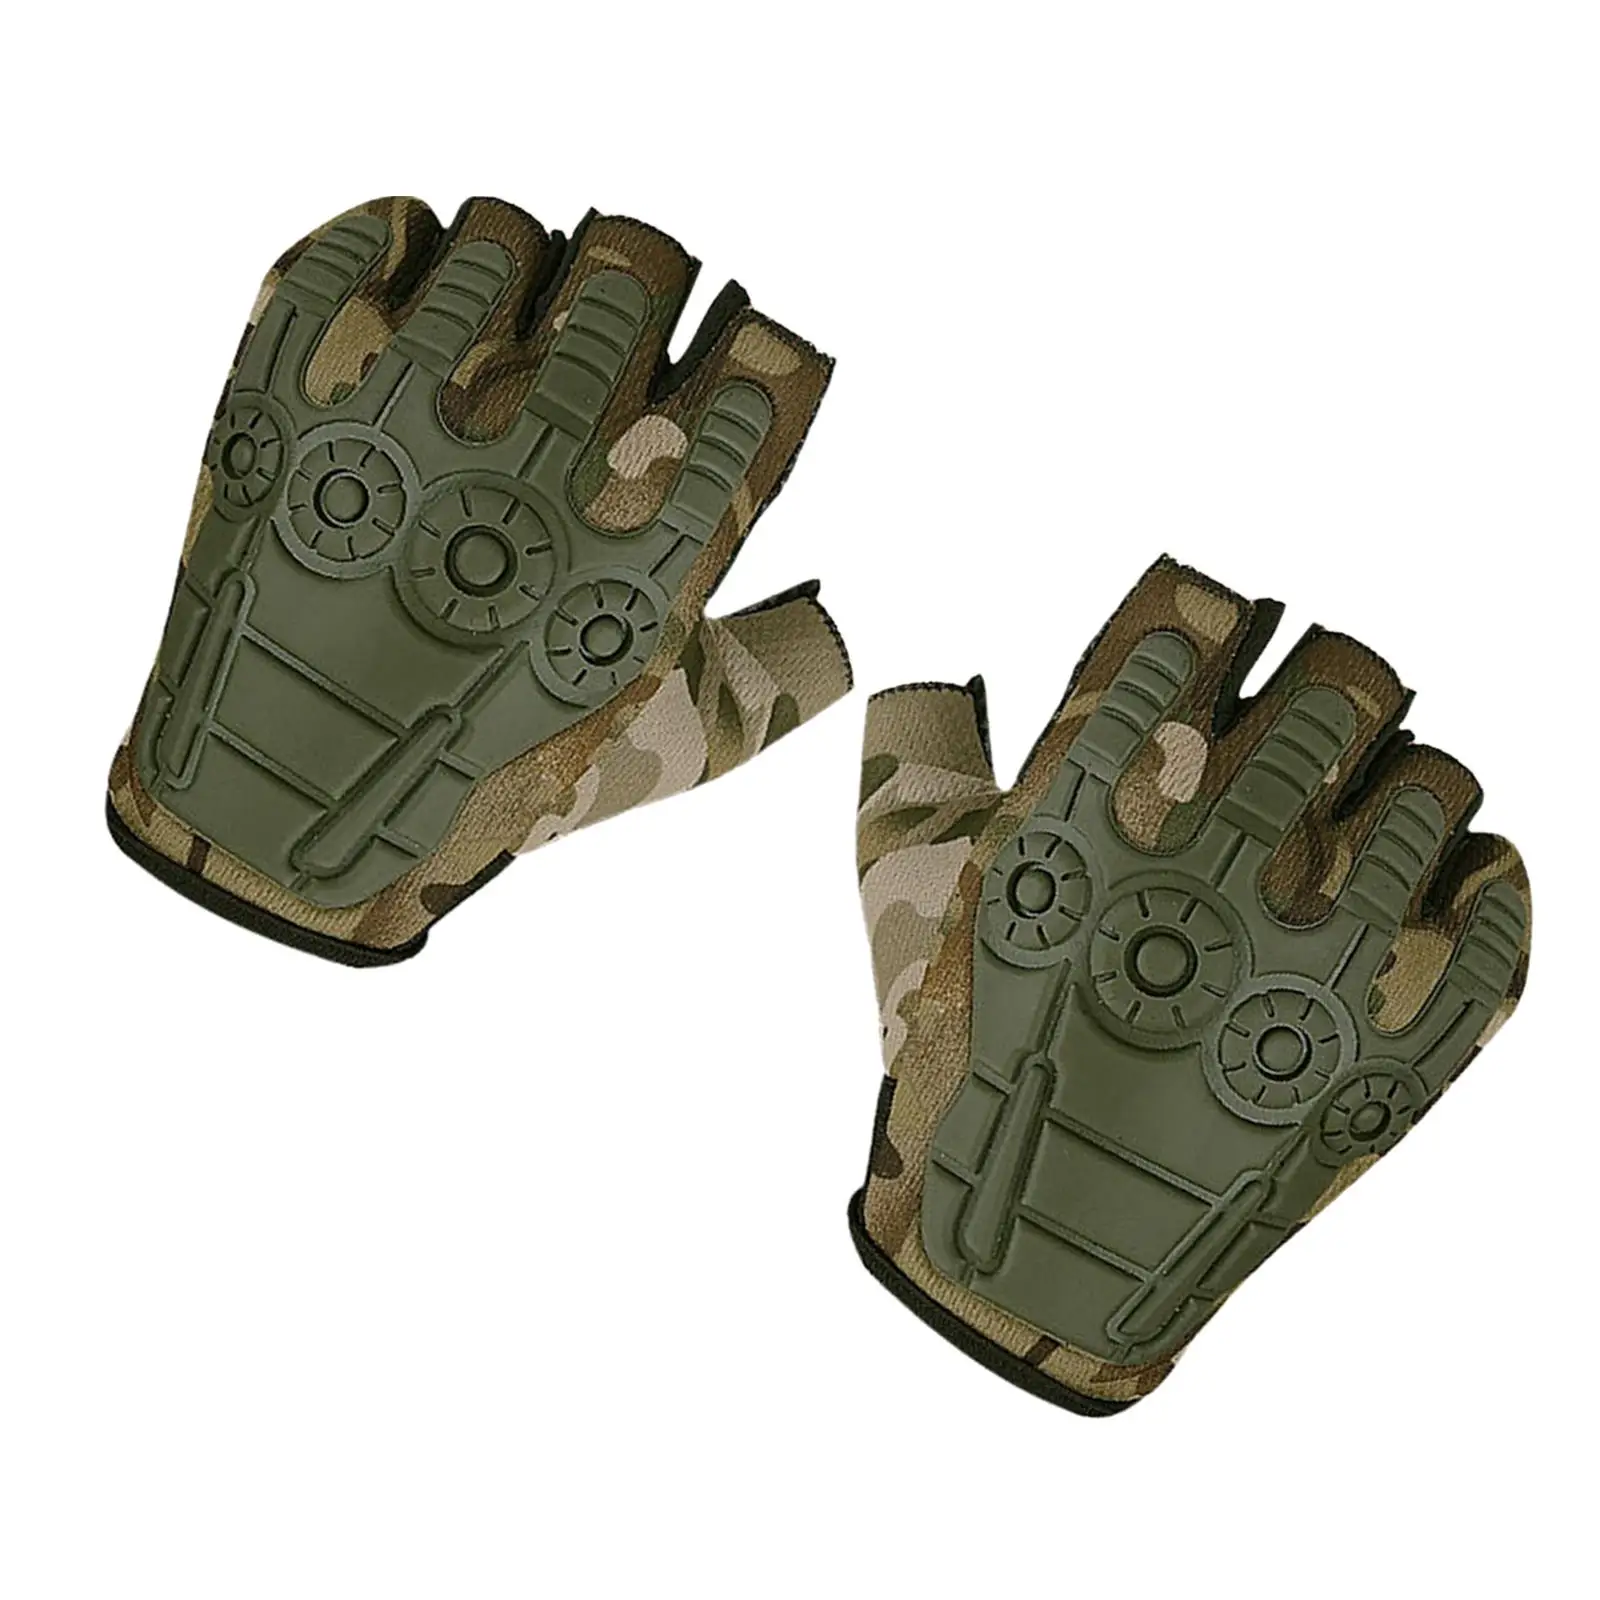 Half Finger Gloves Comfortable Fingerless Gloves Fitness Training Gloves for Women Men Adults Unisex Hiking Training Driving